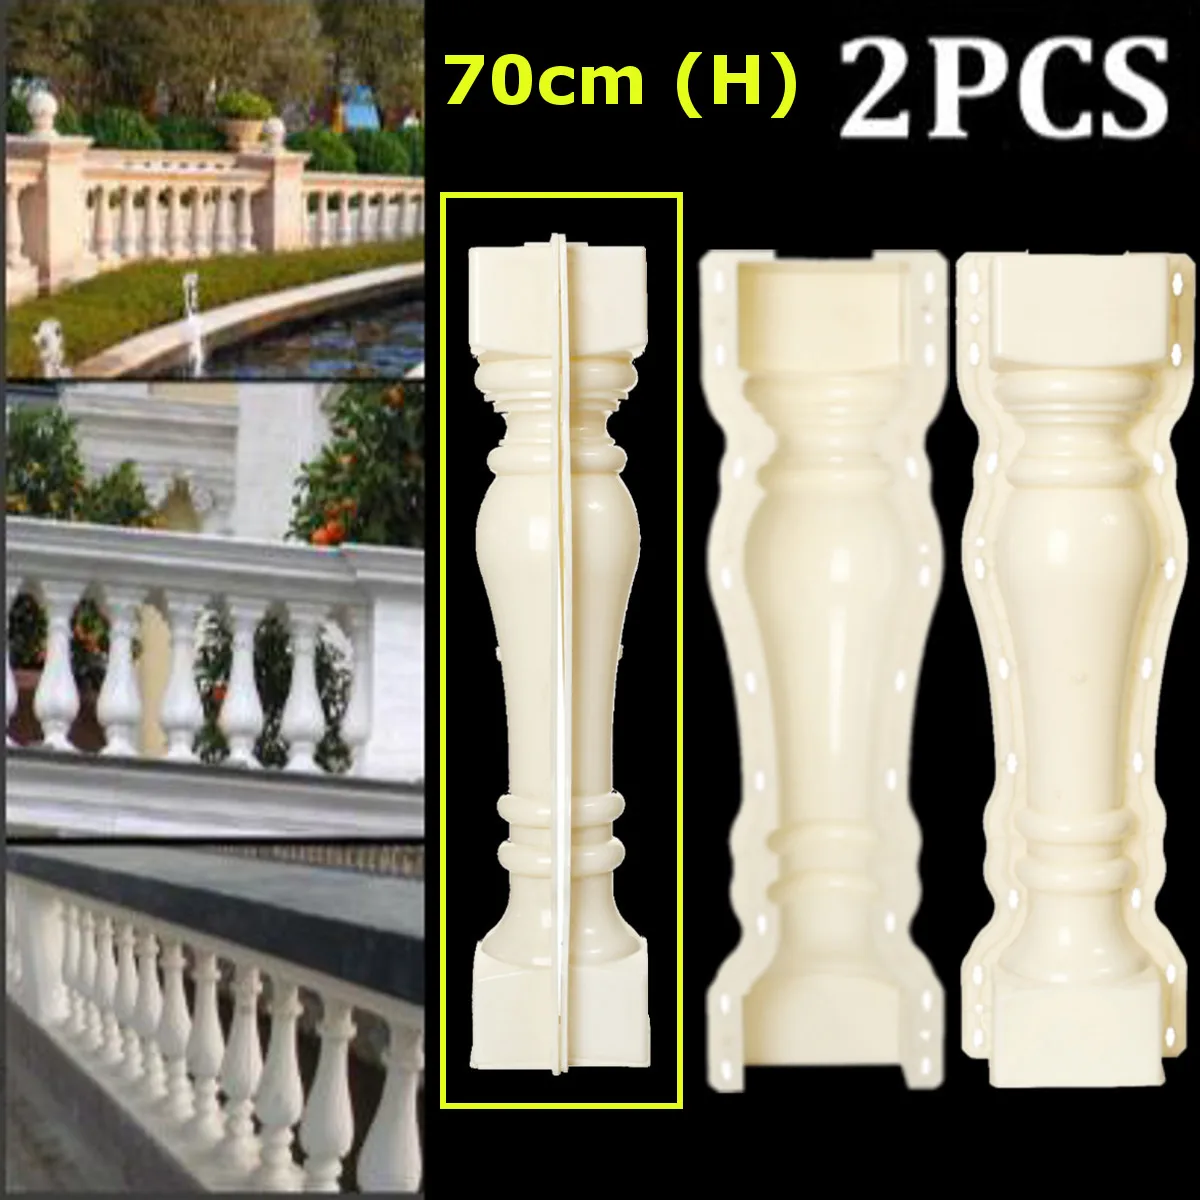 

2Pcs 70*13.5 cm Roman Column Mold Fence Cement Mold Balcony Stair Garden Railing Plaster Concrete Mold Plastic Building Decor